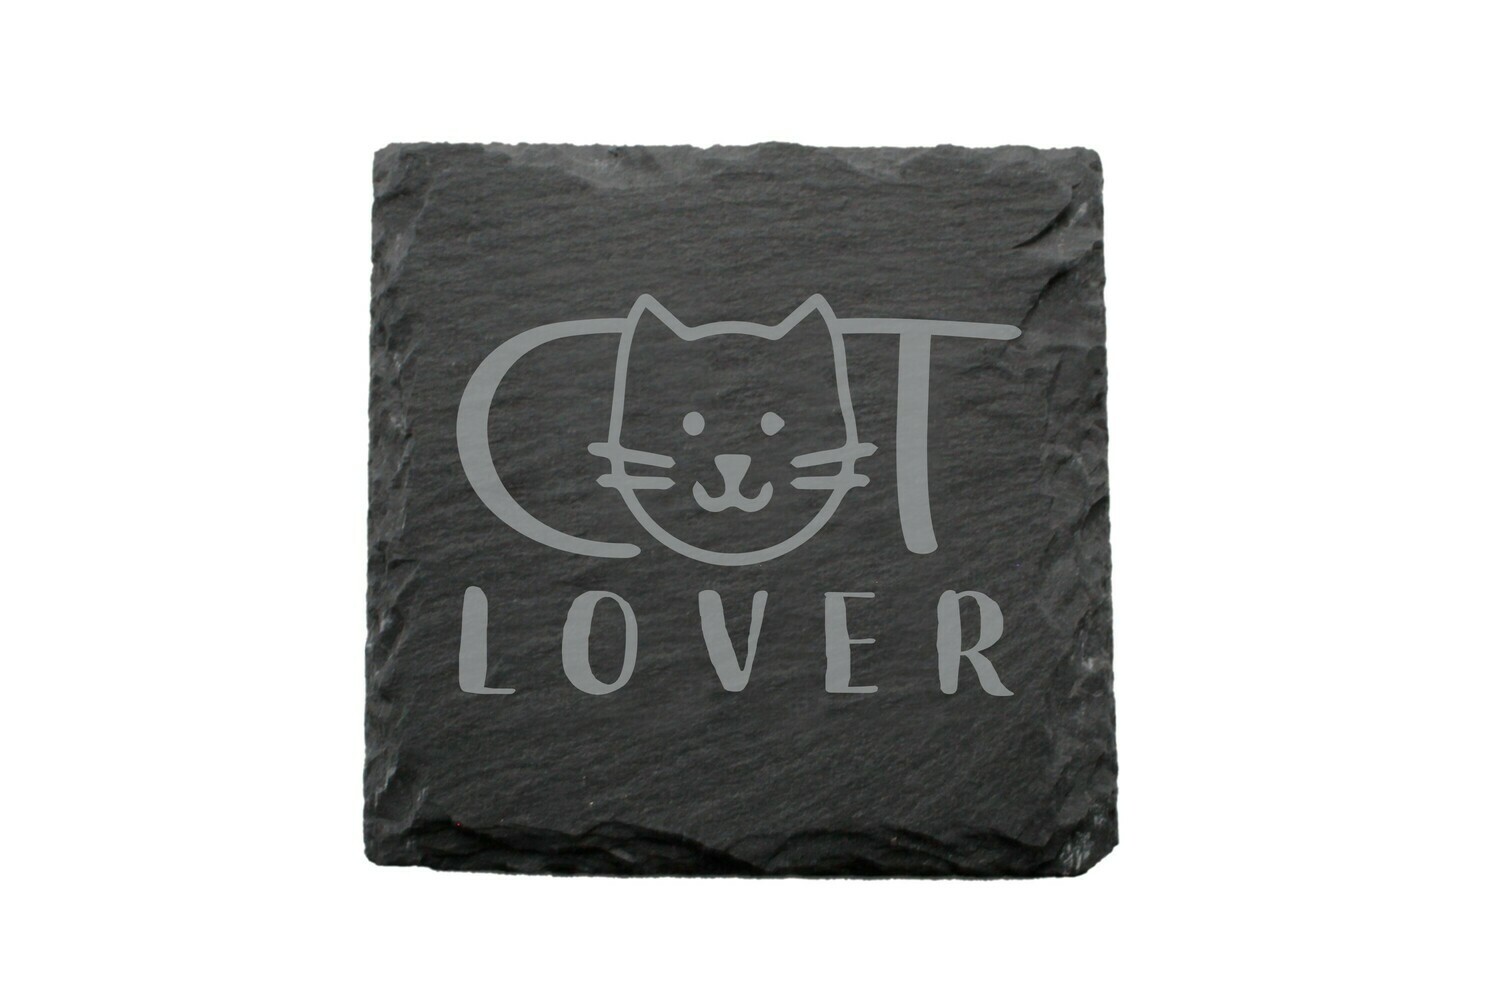 Dog or Cat Lover Image on Slate Coaster Set